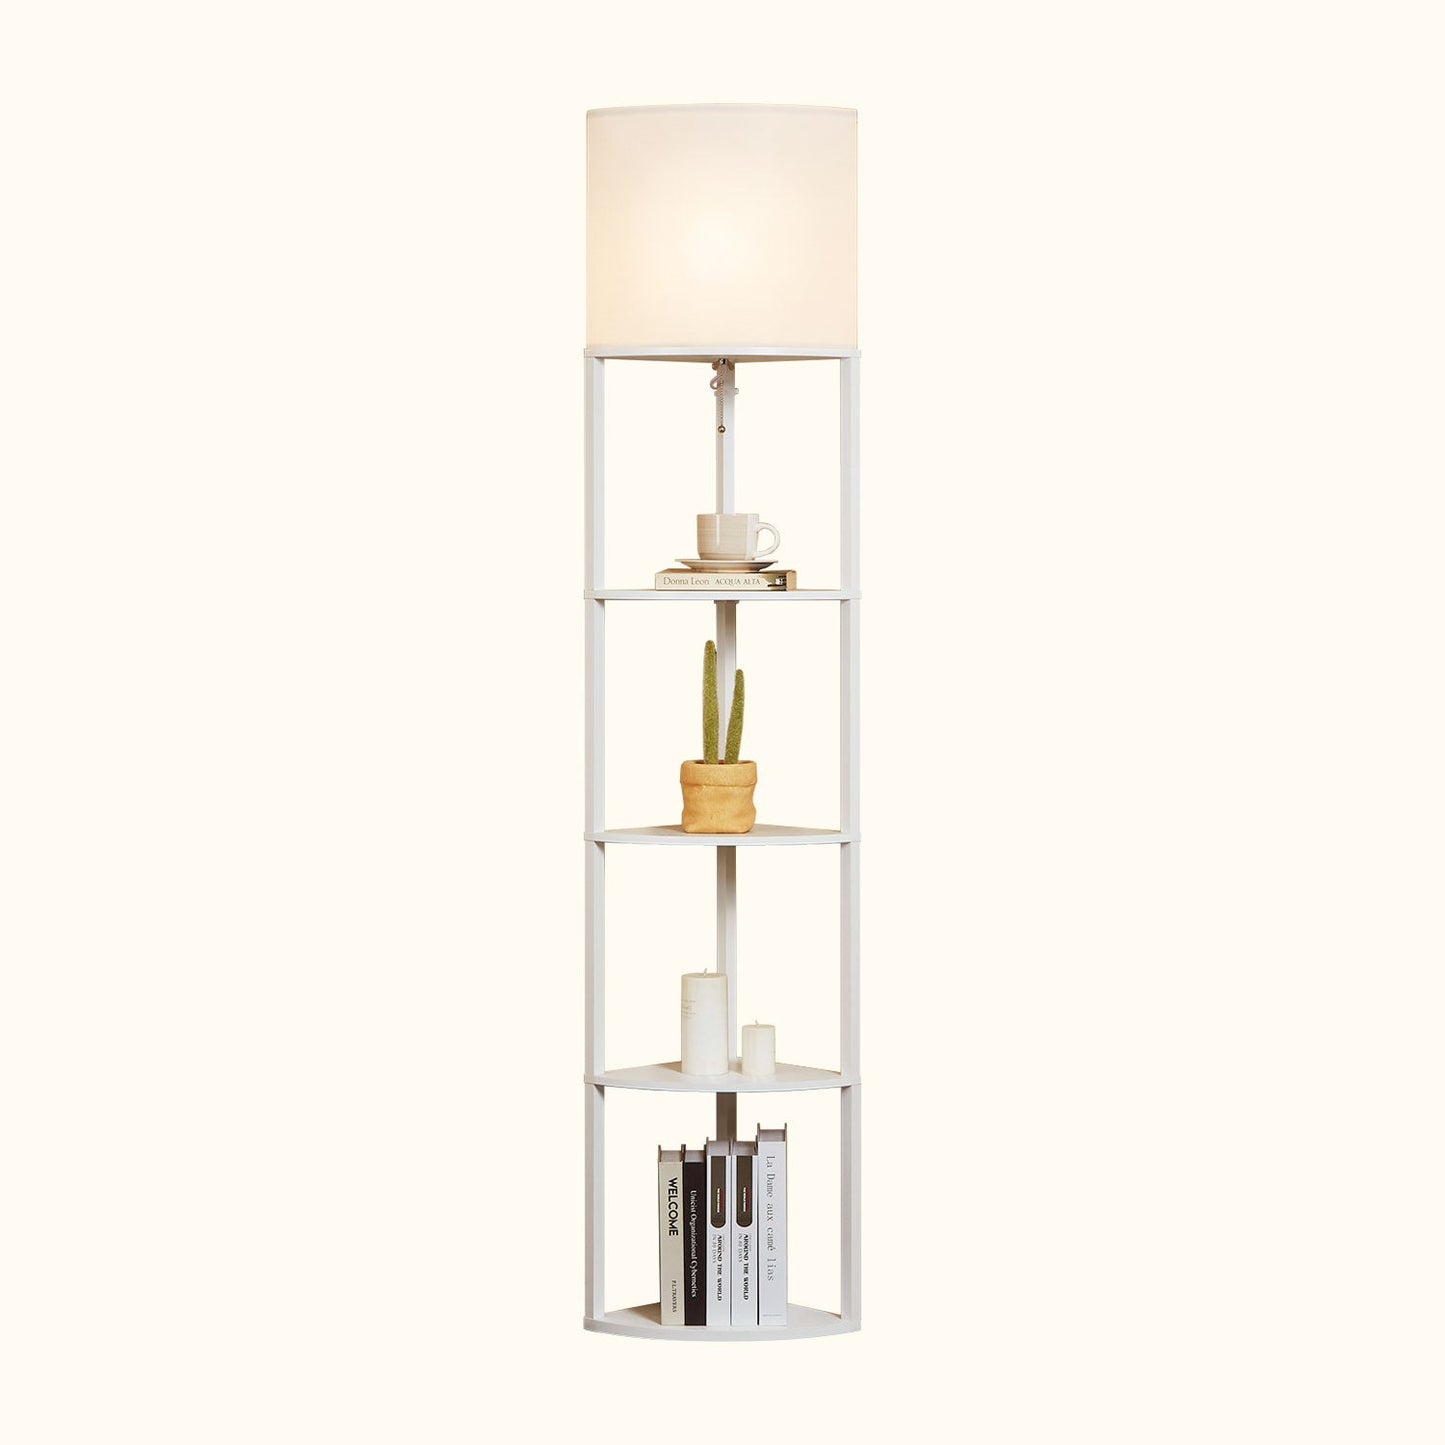 Alvis Edge 72" Corner Floor Lamp with Shelves